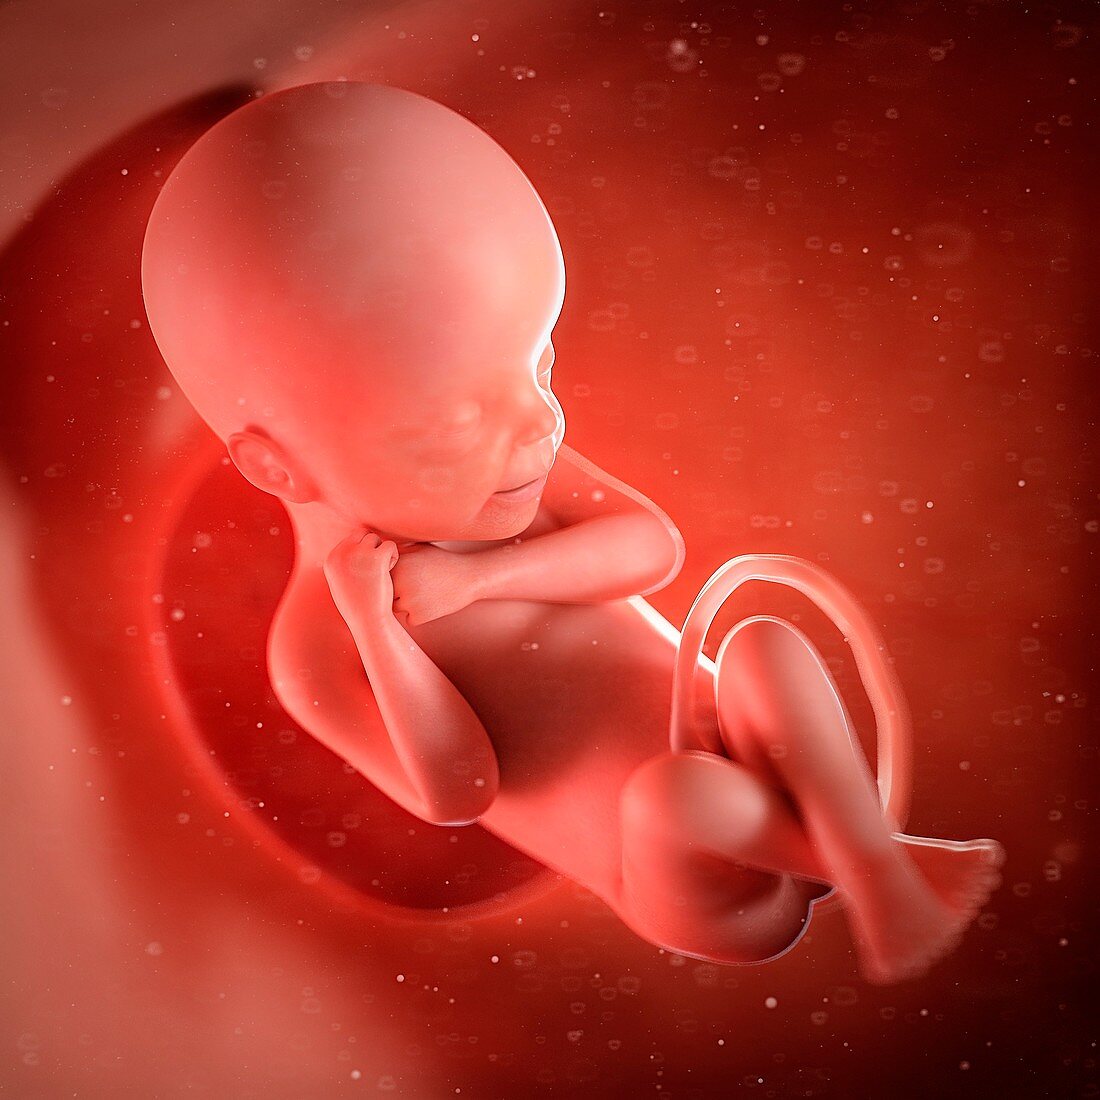 Human foetus age 24 weeks, illustration